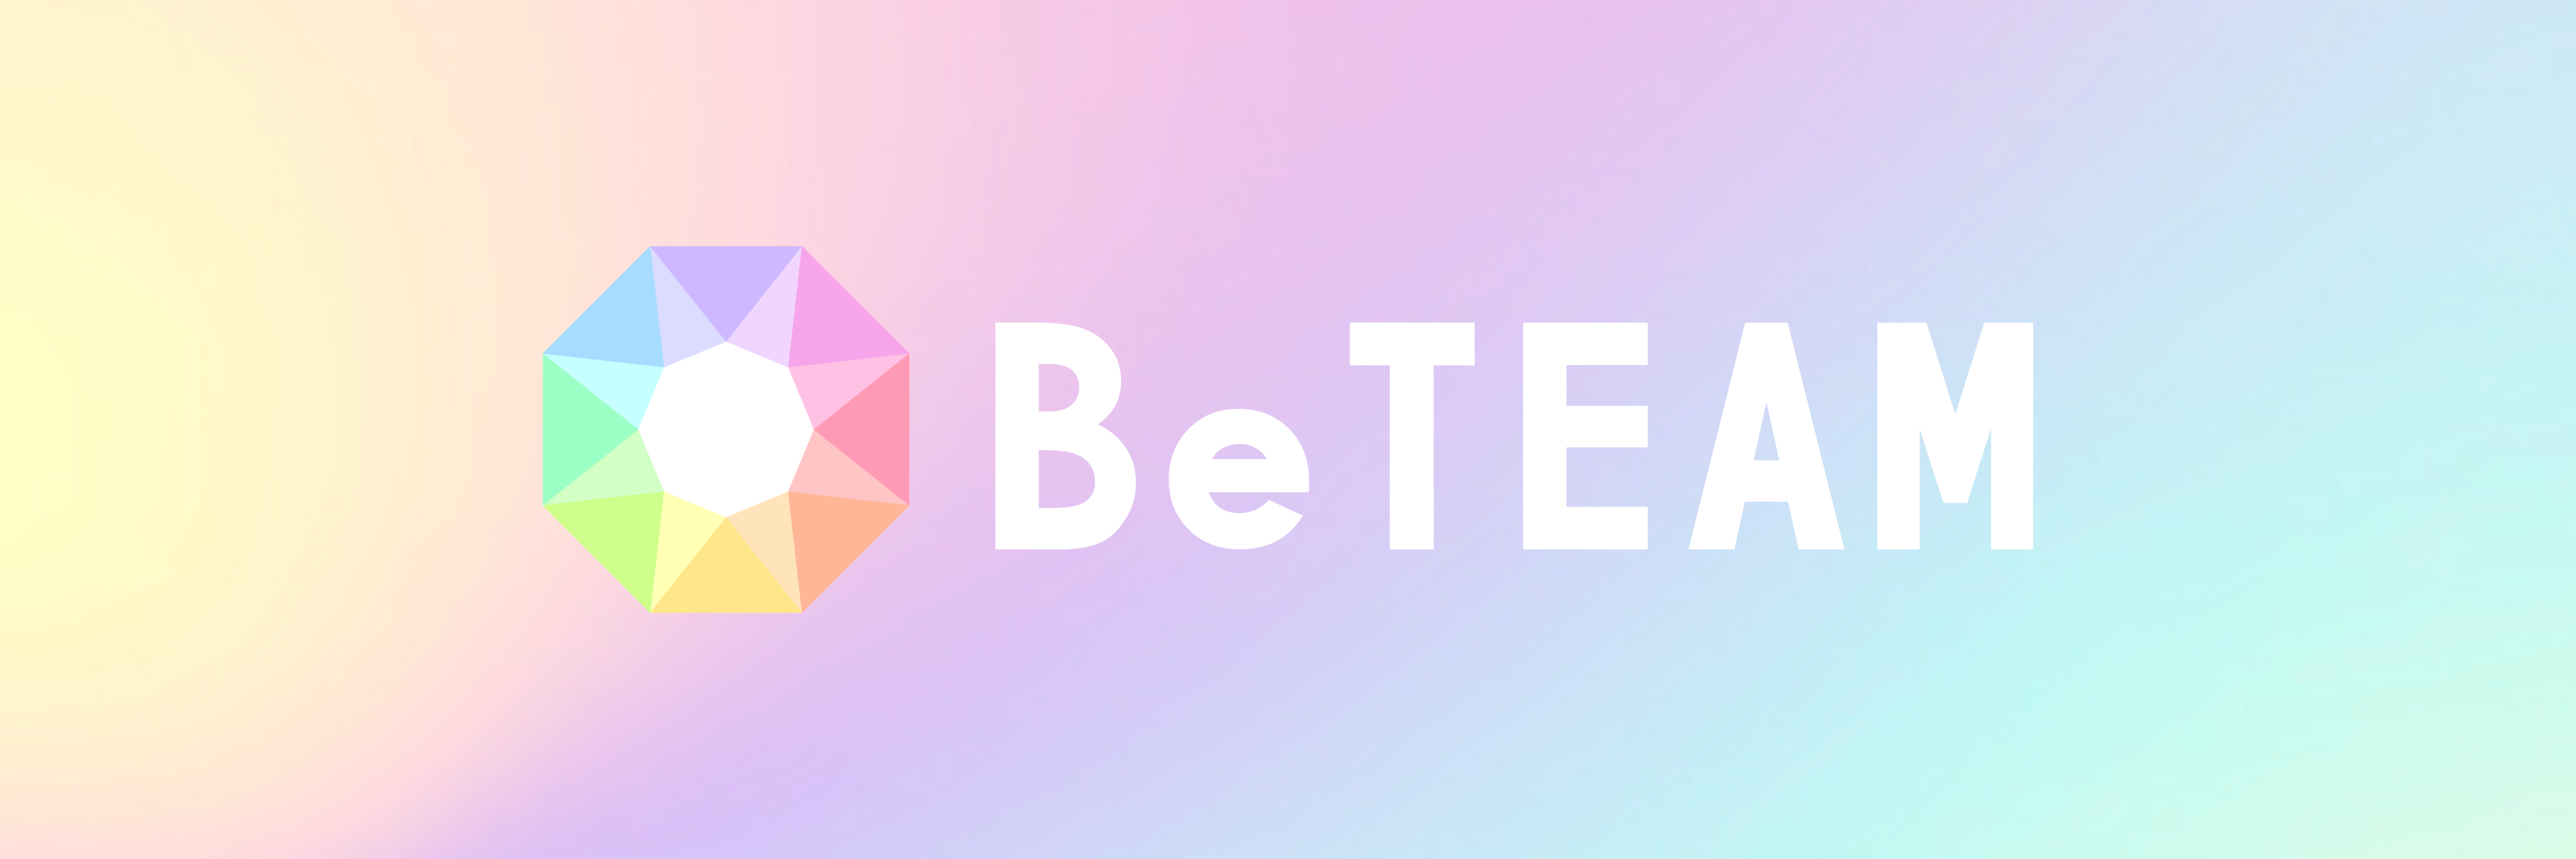 オンラインダイエットサービスアプリ『BeTEAM』のPRサポート開始